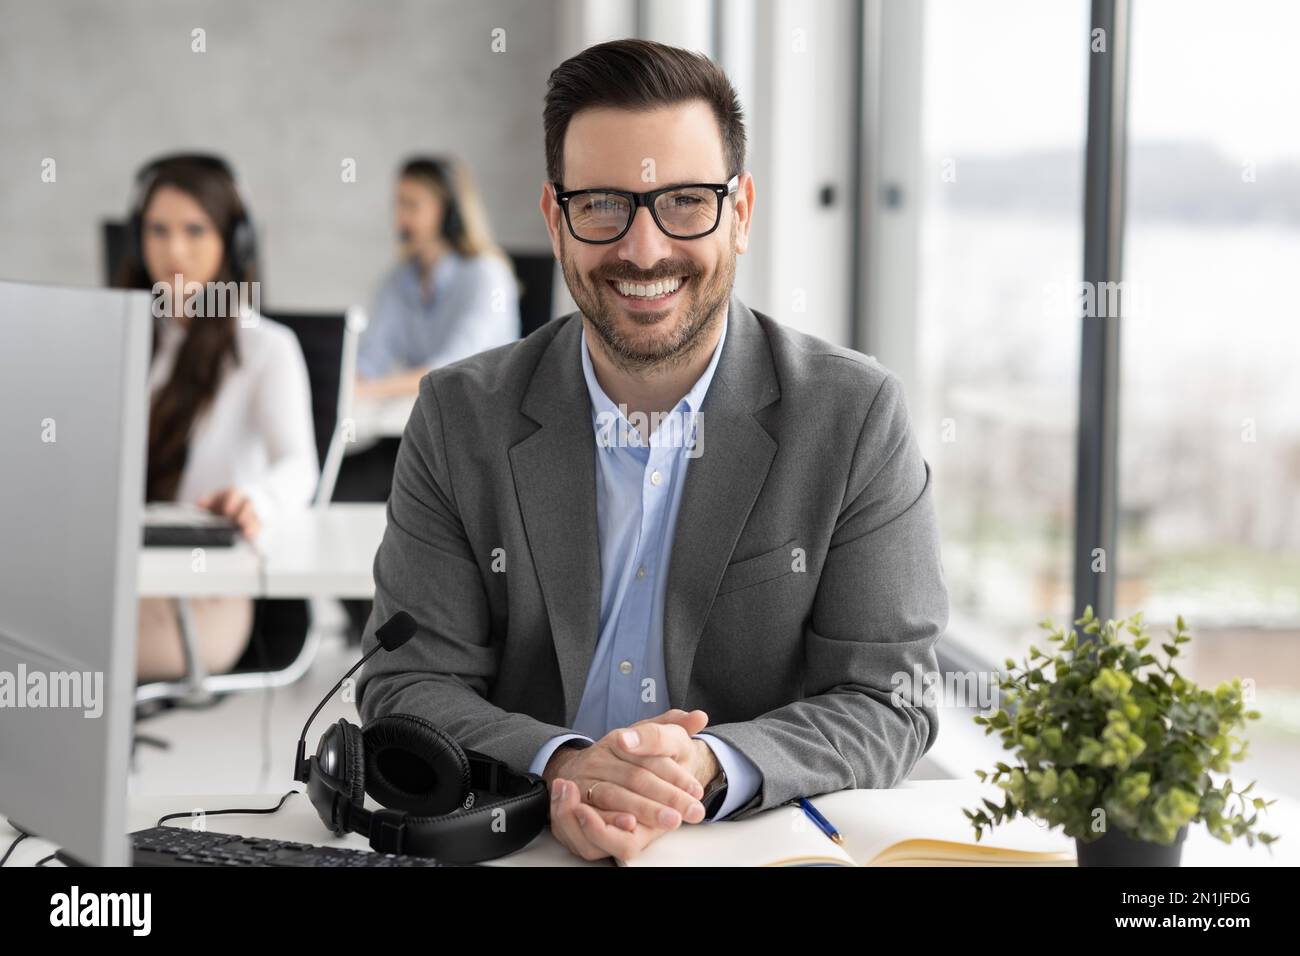 Lächelnder, bärtiger Geschäftsmann mit Brille im Callcenter-Büro Stockfoto